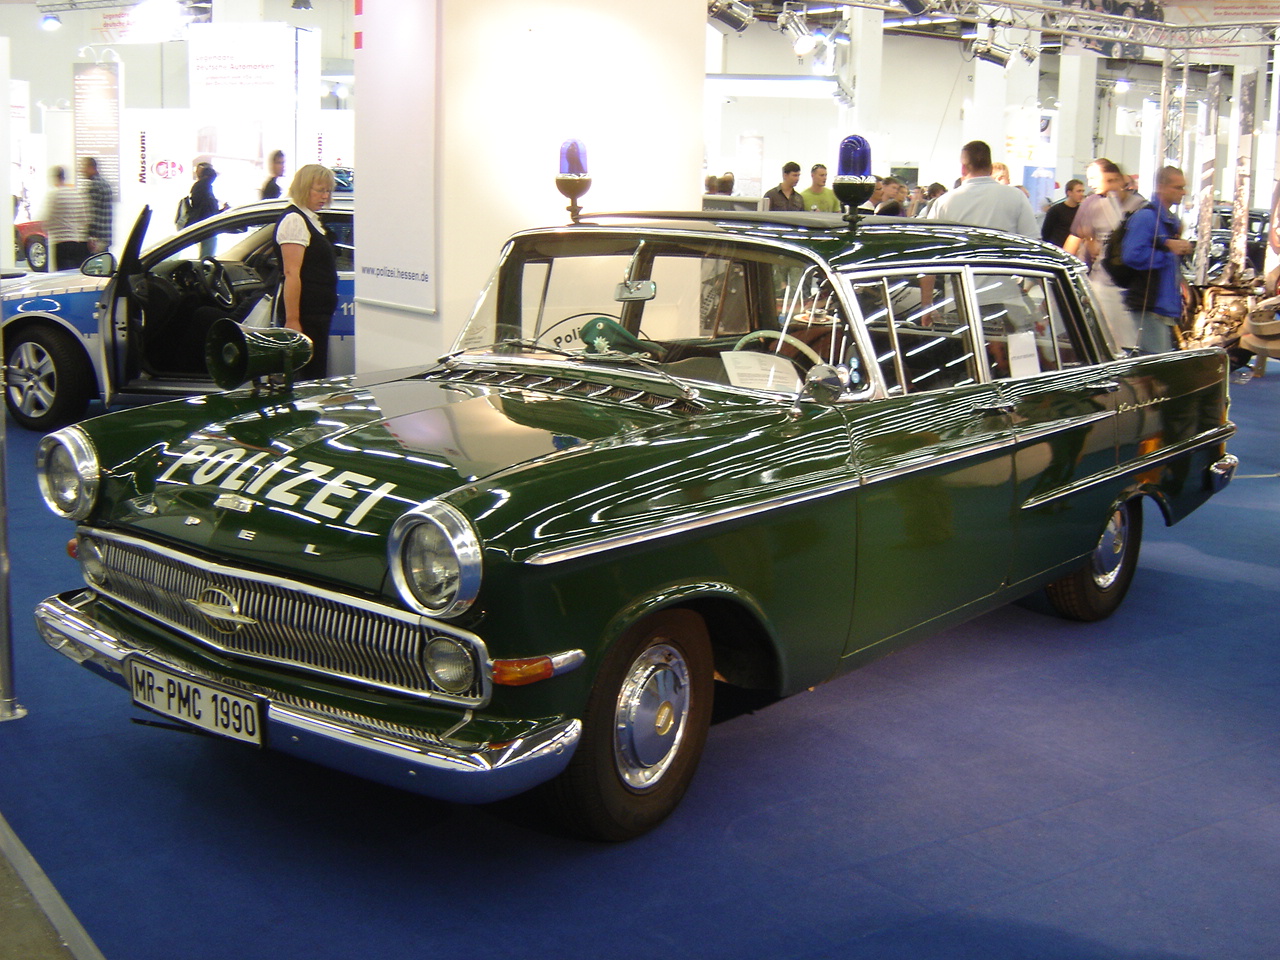 IAA 2009: Opel KapitÃ¤n Polizei (1961) | Flickr - Photo Sharing!